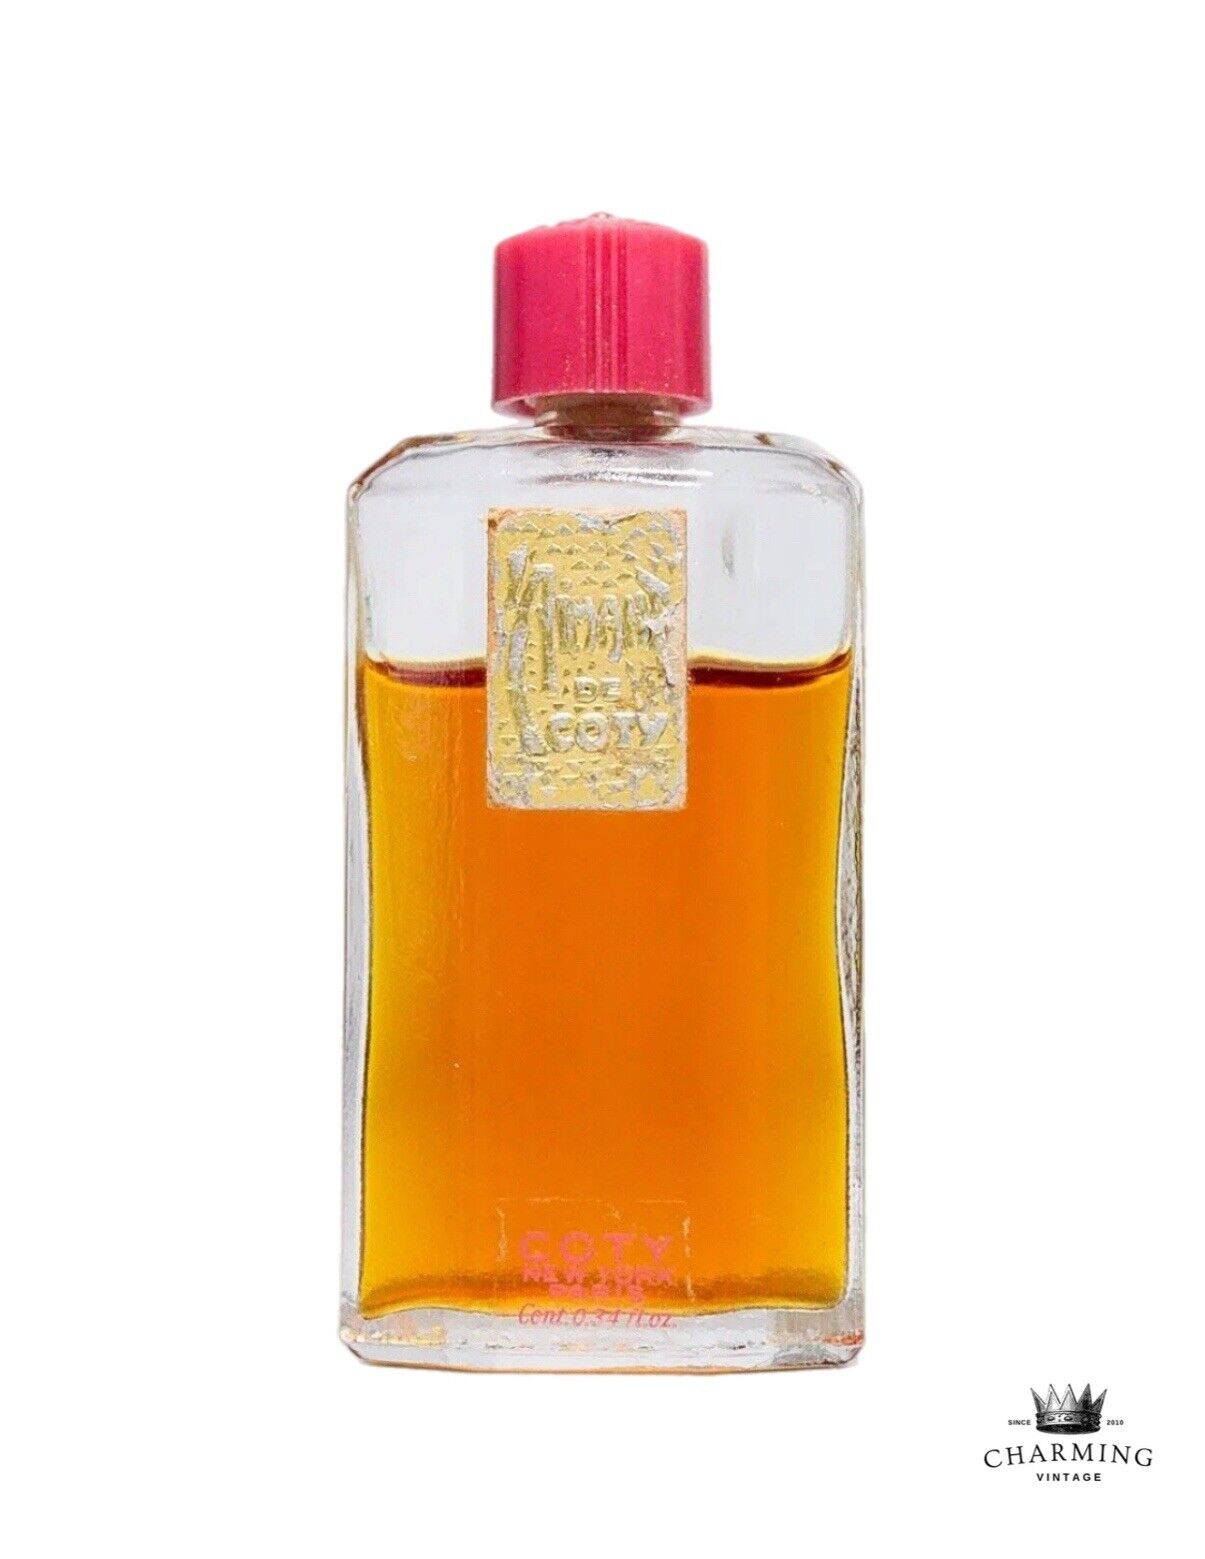 RARE Vintage L'Aimant de COTY Paris NY Parfum Perfume Travel Size 85% Full